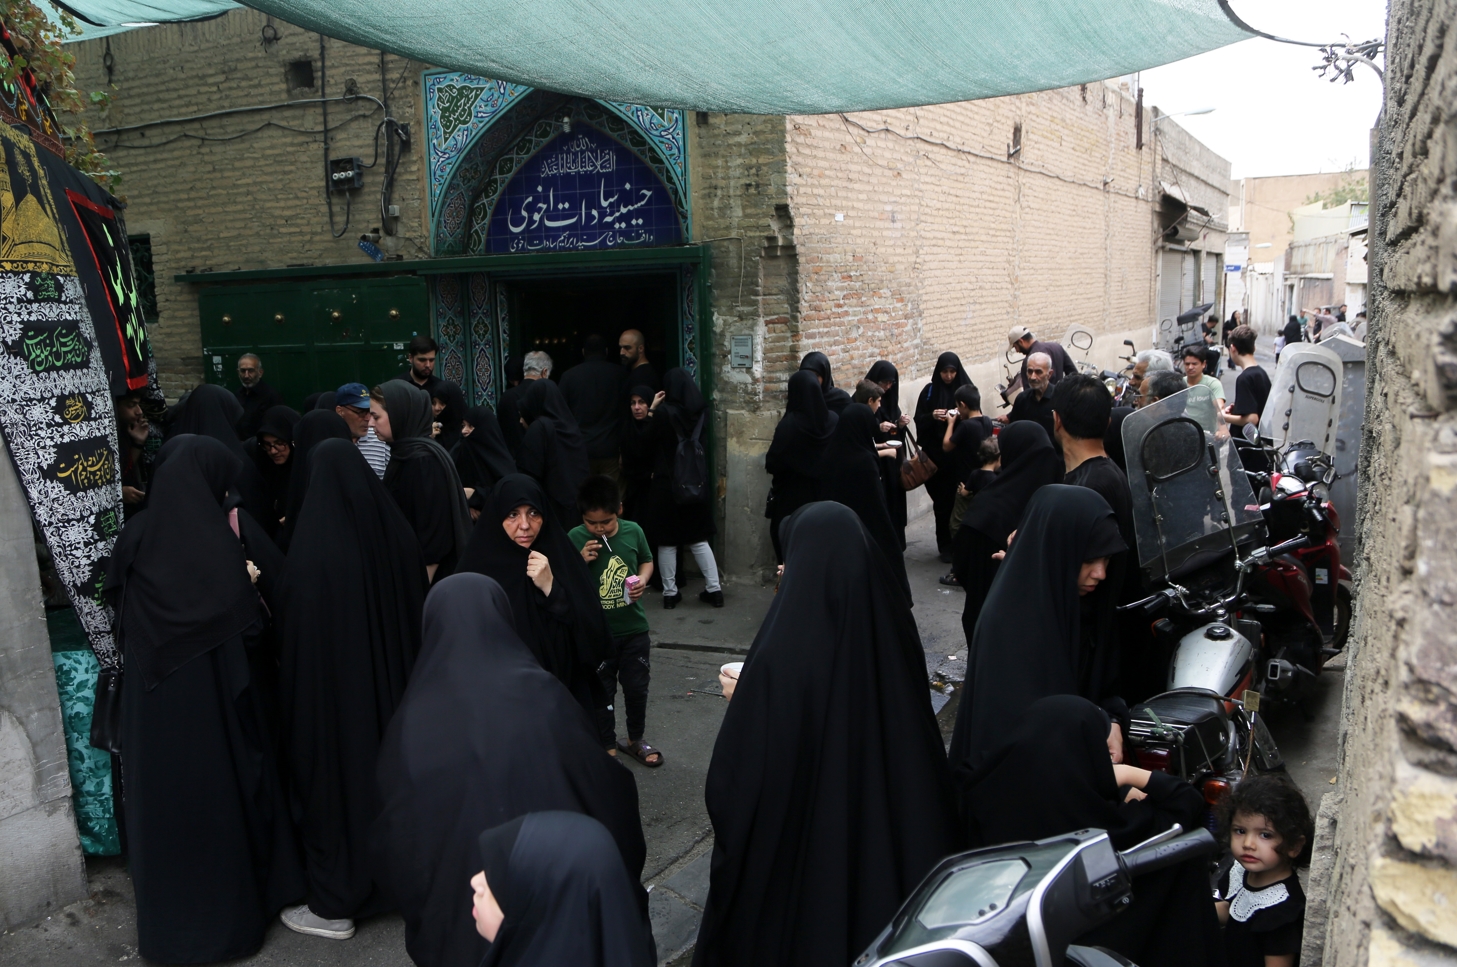 İran'da Muharrem ayı etkinlikleri kapsamında Başkent Tahran'ın güneyinde yer alan en eski hüseyniyelerinden biri ve yaklaşık 250 yıl bir geçmişe sahip olan Sadat Ahavi Hüseyniyesi'nde , Muharrem ayı boyunca sabahlar geleneksel yas törenleri düzenleniyor.
